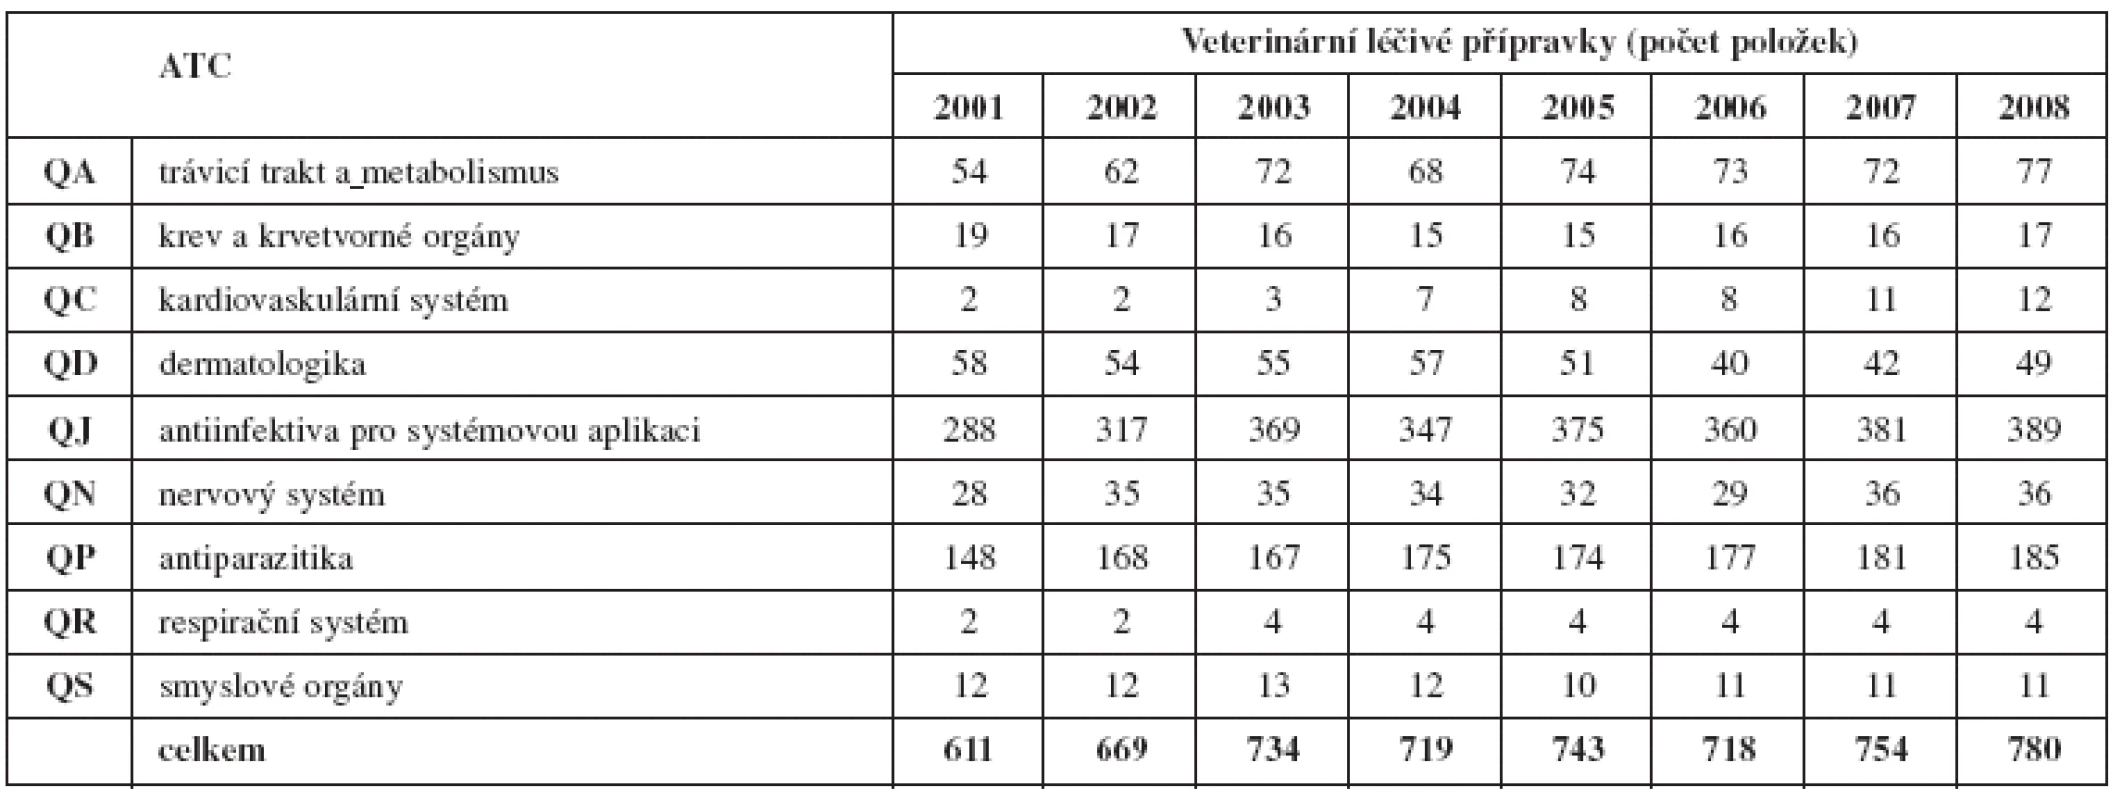 Počet položek VLP ve vybraných ATCvet skupinách v letech 2001–2008